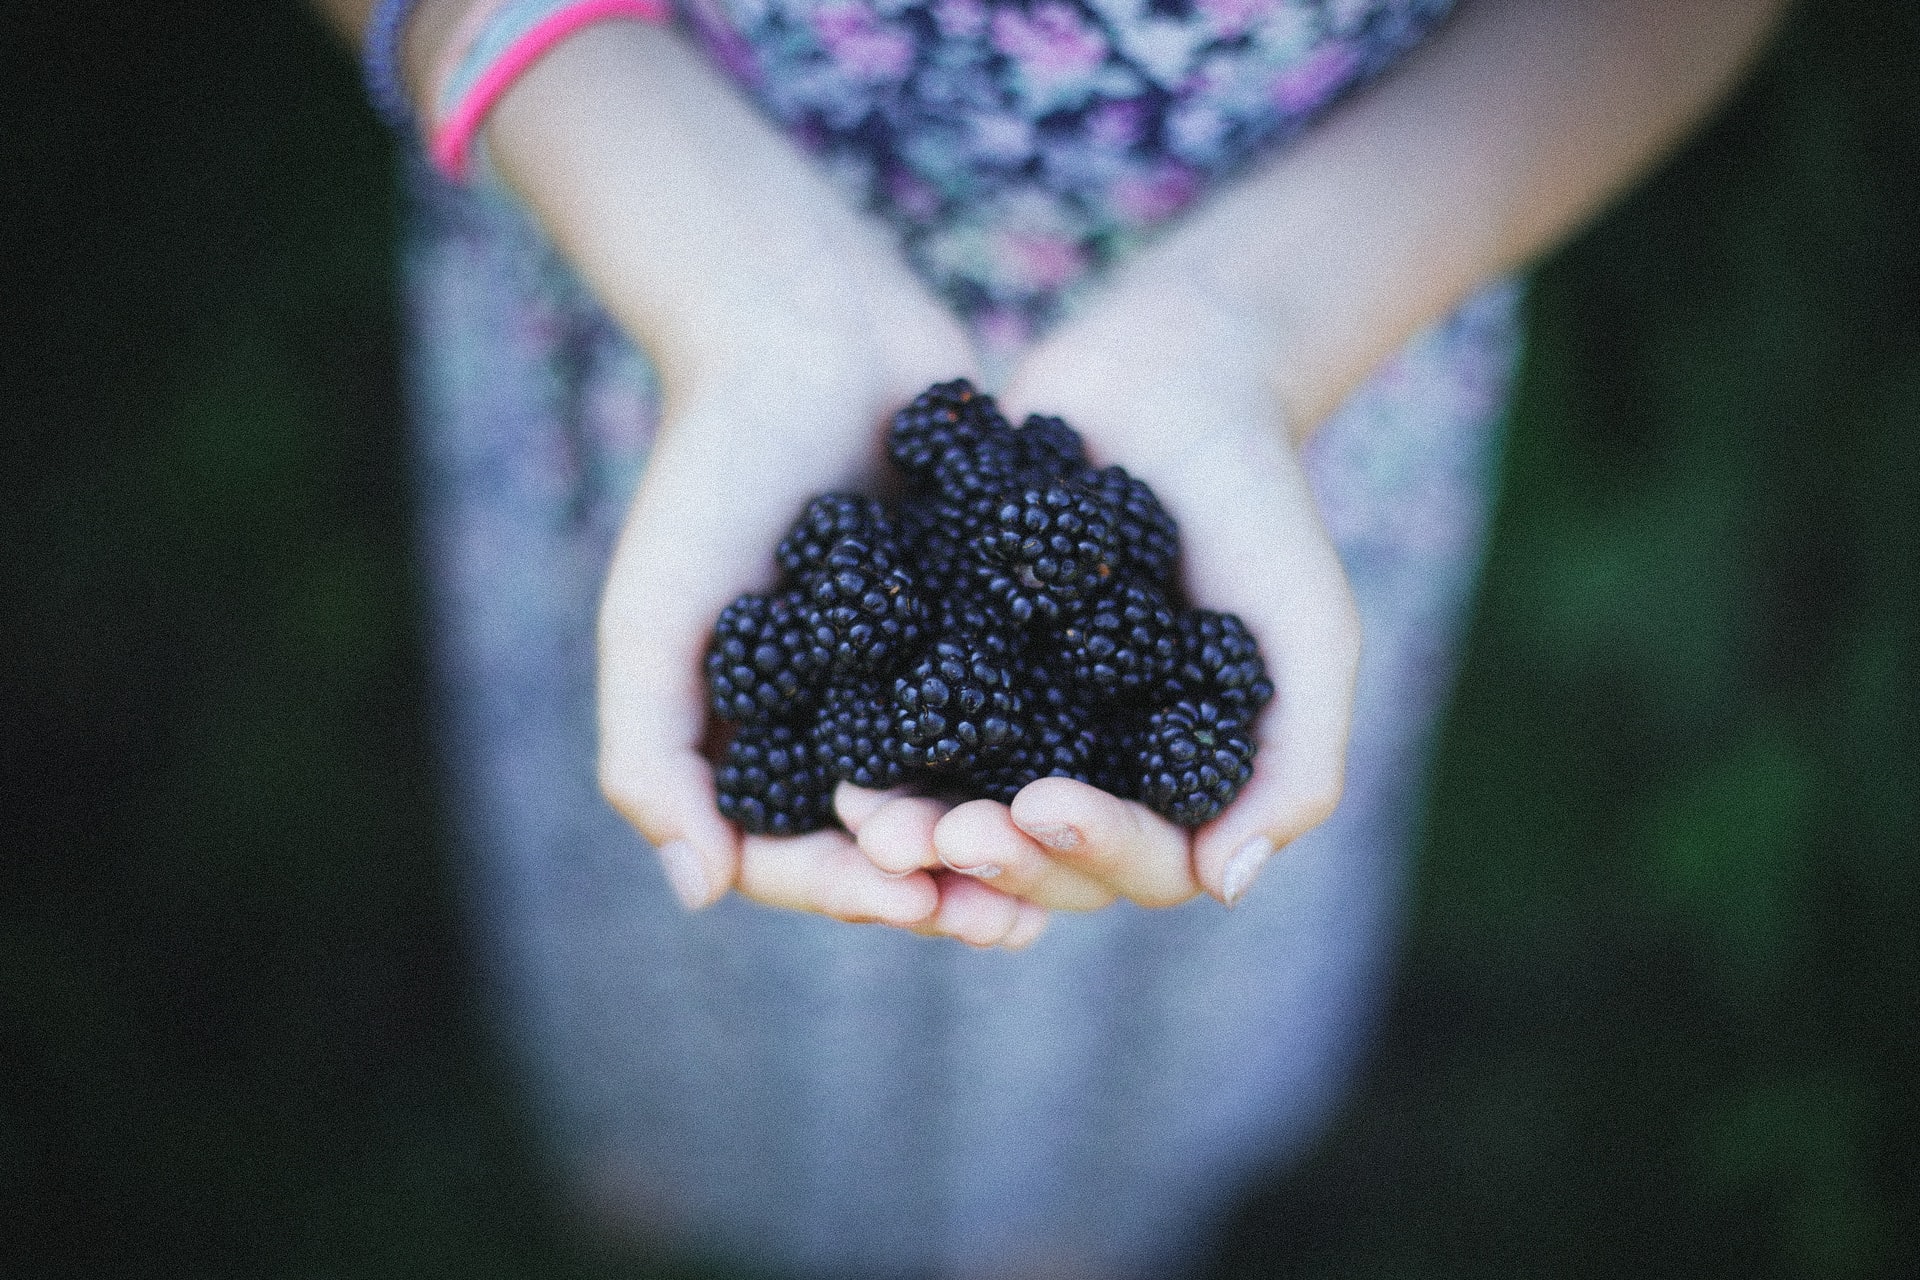 Hands holding berries